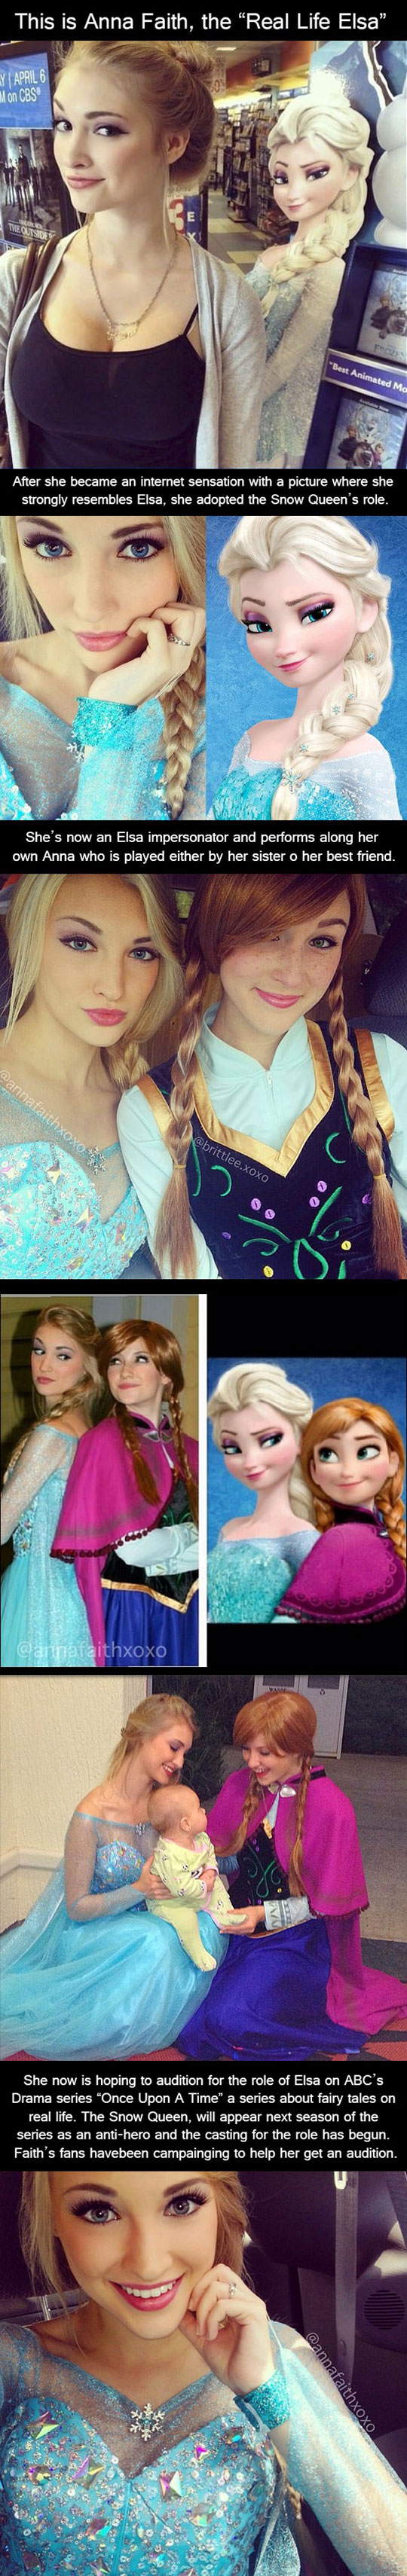 The Real Life Elsa